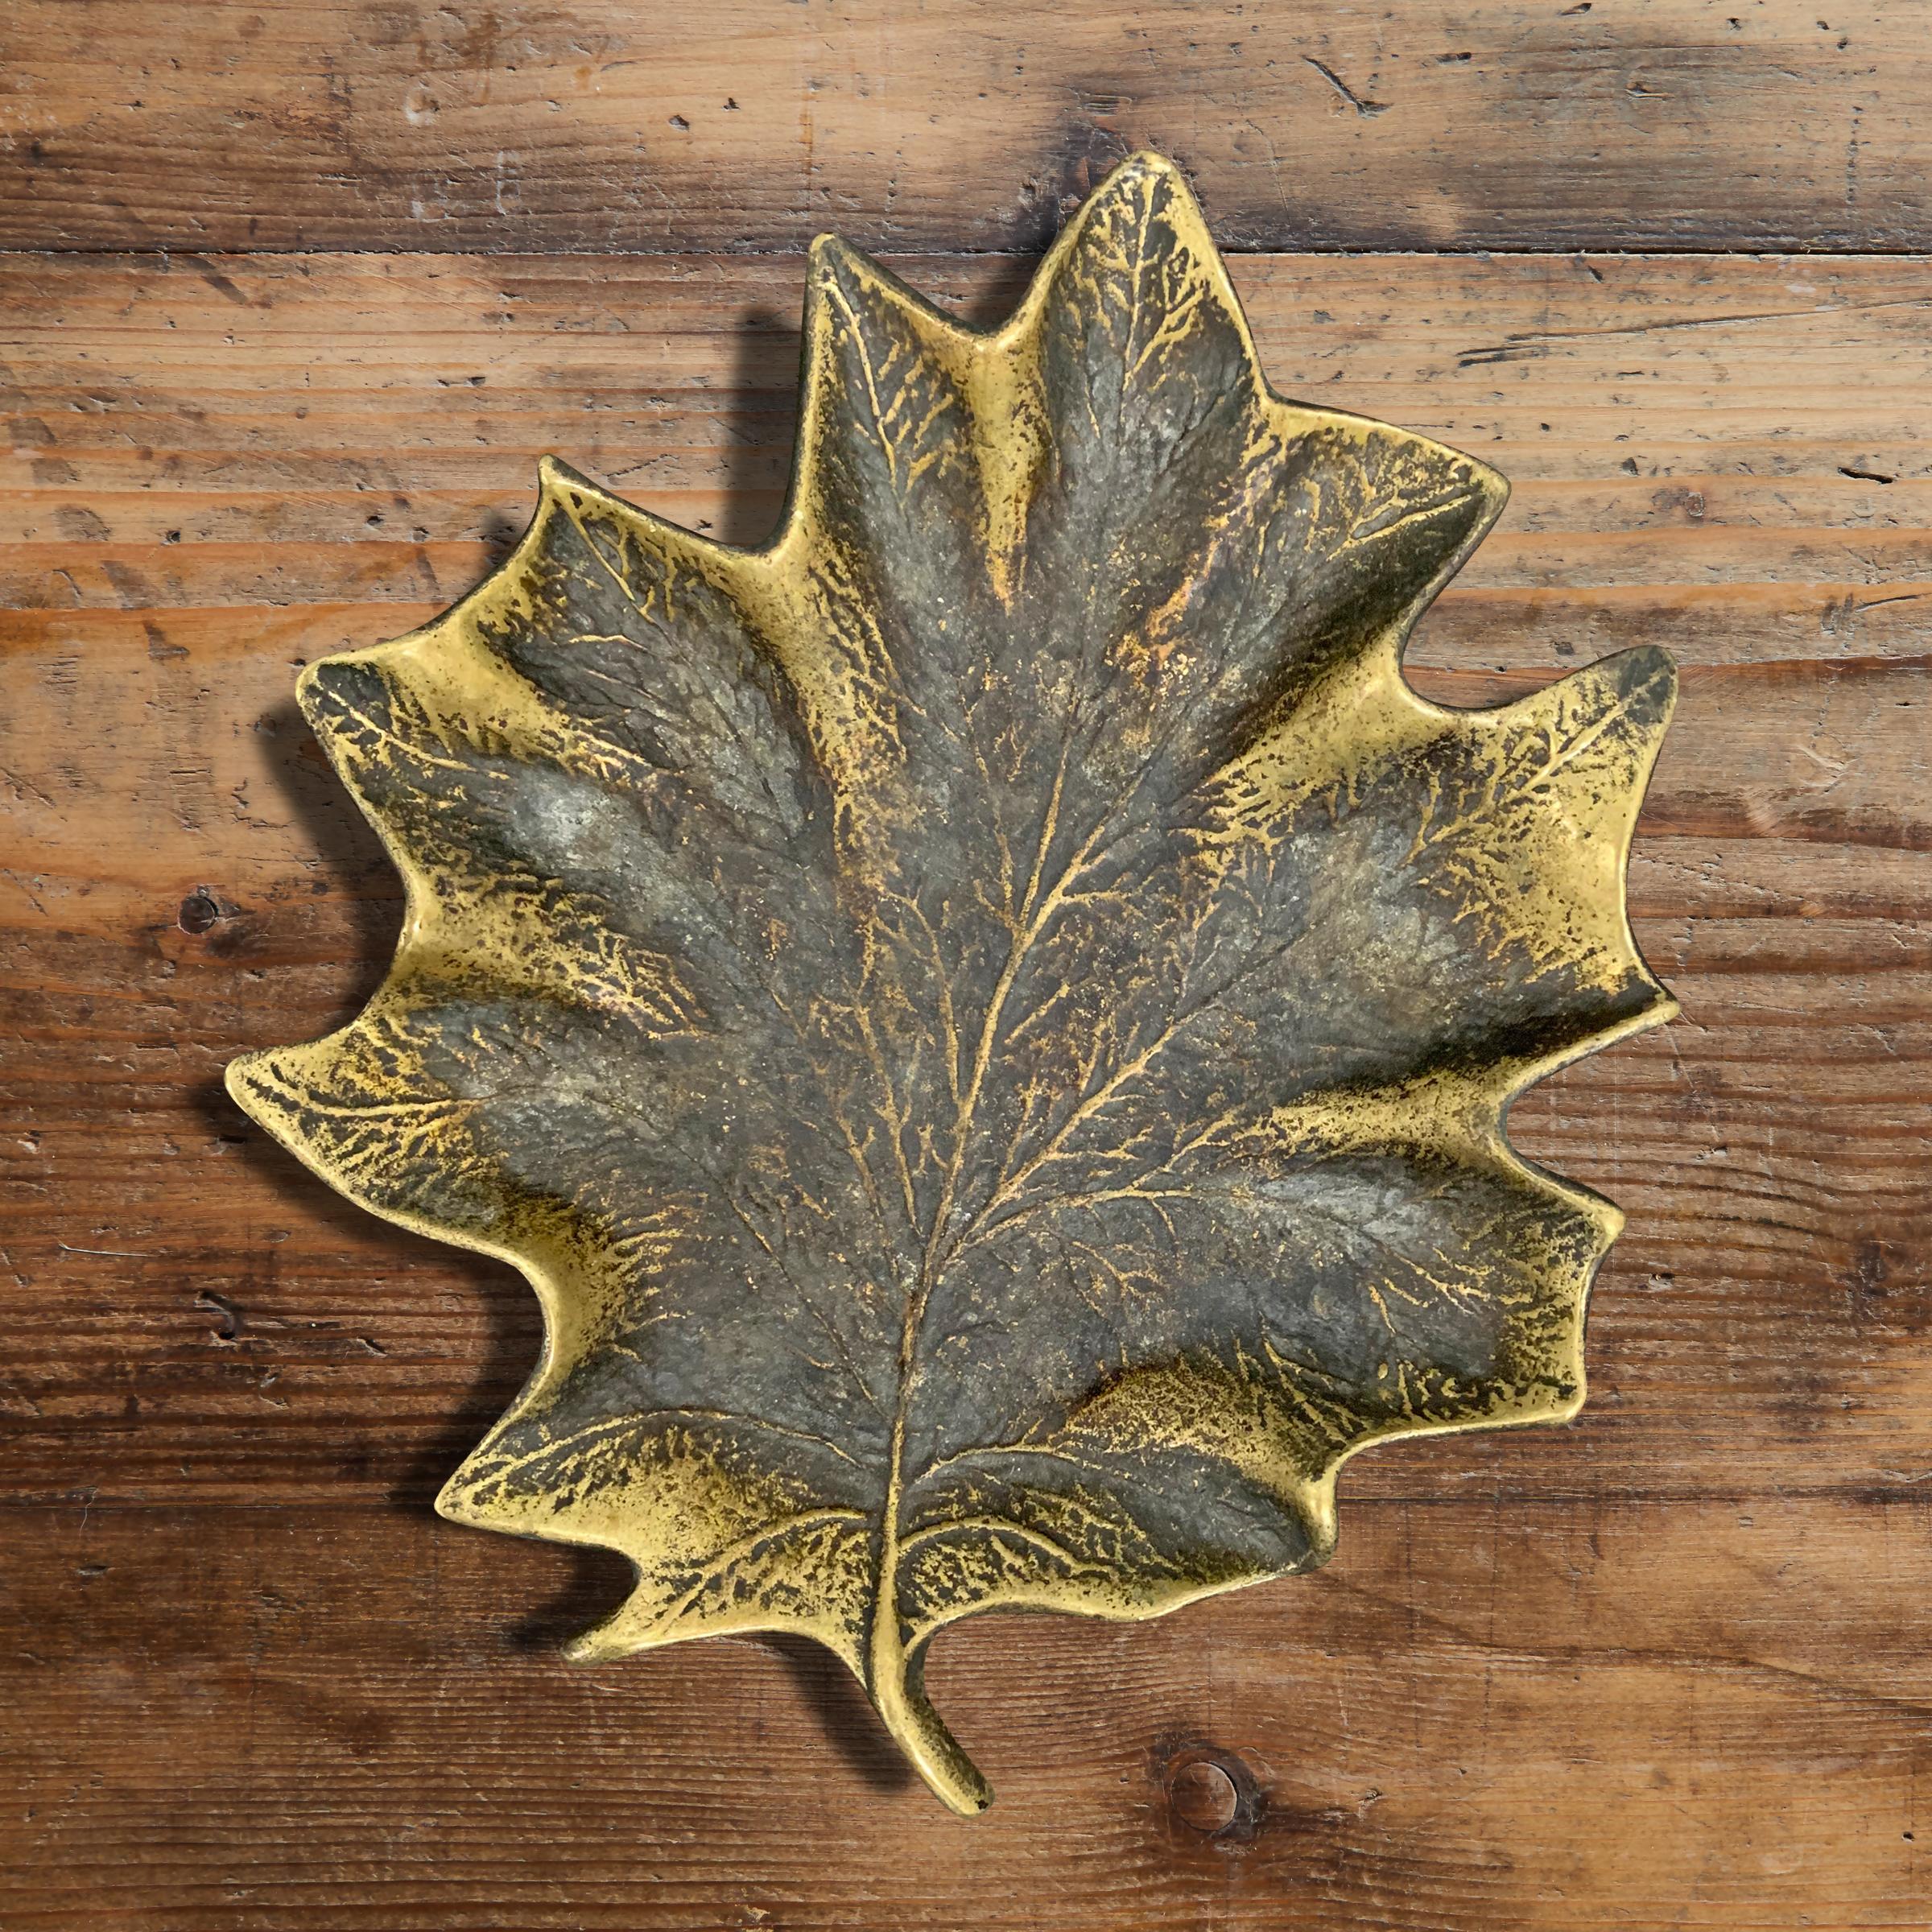 Un merveilleux plat vintage en bronze grandeur nature en forme de feuille d'érable avec une patine fantastique. Parfait pour attraper vos clés, votre monnaie de poche, ou tout autre objet que vous pourriez avoir.